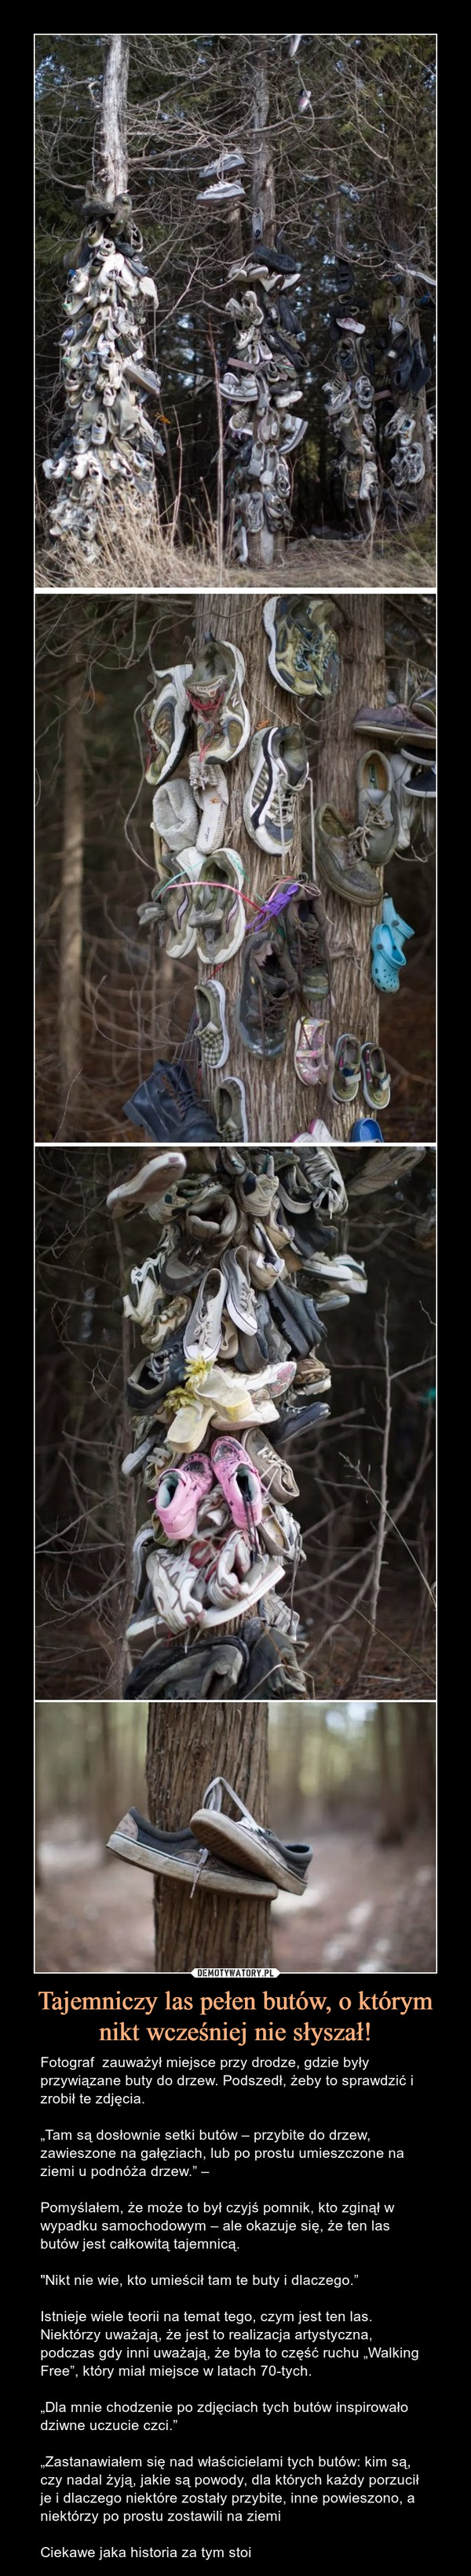 Tajemniczy las pełen butów, o którym nikt wcześniej nie słyszał! – Fotograf  zauważył miejsce przy drodze, gdzie były przywiązane buty do drzew. Podszedł, żeby to sprawdzić i zrobił te zdjęcia.„Tam są dosłownie setki butów – przybite do drzew, zawieszone na gałęziach, lub po prostu umieszczone na ziemi u podnóża drzew.” – Pomyślałem, że może to był czyjś pomnik, kto zginął w wypadku samochodowym – ale okazuje się, że ten las butów jest całkowitą tajemnicą."Nikt nie wie, kto umieścił tam te buty i dlaczego.”Istnieje wiele teorii na temat tego, czym jest ten las. Niektórzy uważają, że jest to realizacja artystyczna, podczas gdy inni uważają, że była to część ruchu „Walking Free”, który miał miejsce w latach 70-tych.„Dla mnie chodzenie po zdjęciach tych butów inspirowało dziwne uczucie czci.”„Zastanawiałem się nad właścicielami tych butów: kim są, czy nadal żyją, jakie są powody, dla których każdy porzucił je i dlaczego niektóre zostały przybite, inne powieszono, a niektórzy po prostu zostawili na ziemiCiekawe jaka historia za tym stoi 